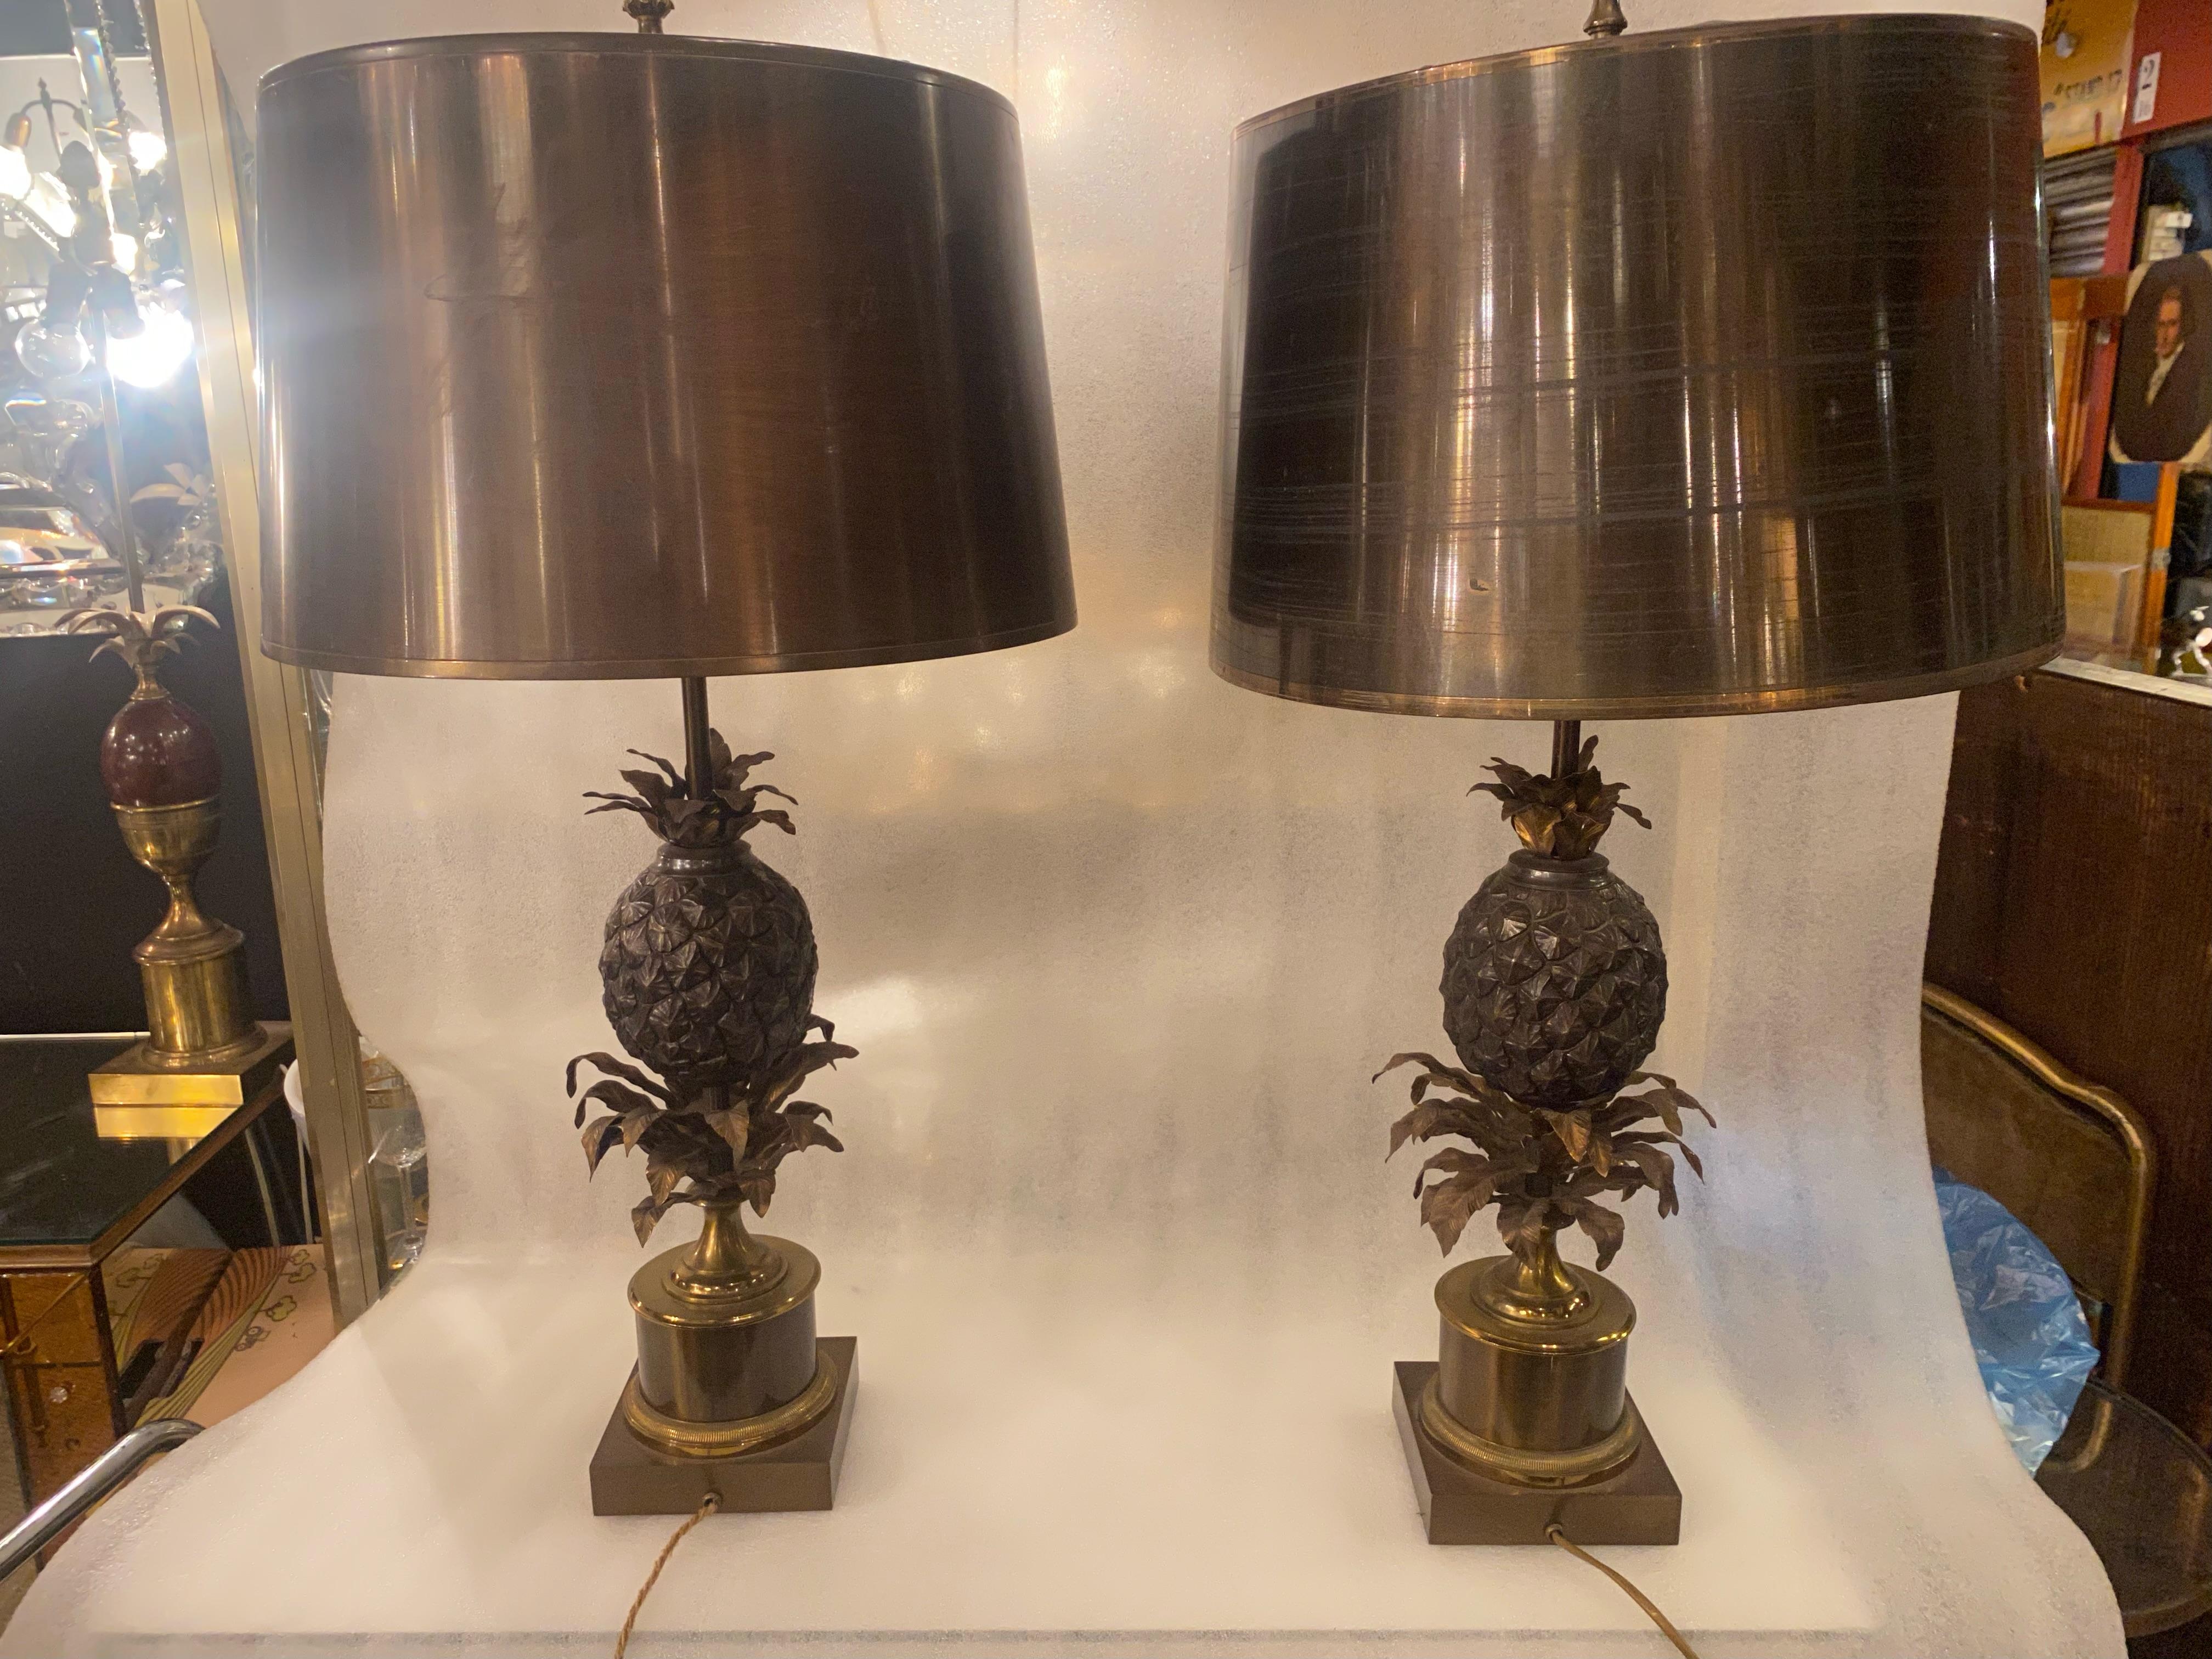 Paar Ananaslampen oder ähnlich, signiert Charles & Fils, hergestellt in Frankreich, Struktur aus Bronze, Lampenschirme aus vergoldetem Messing und an den Rändern poliert, guter Zustand, CIRCA 1950/70
3 Glühlampen, Bajonett- und